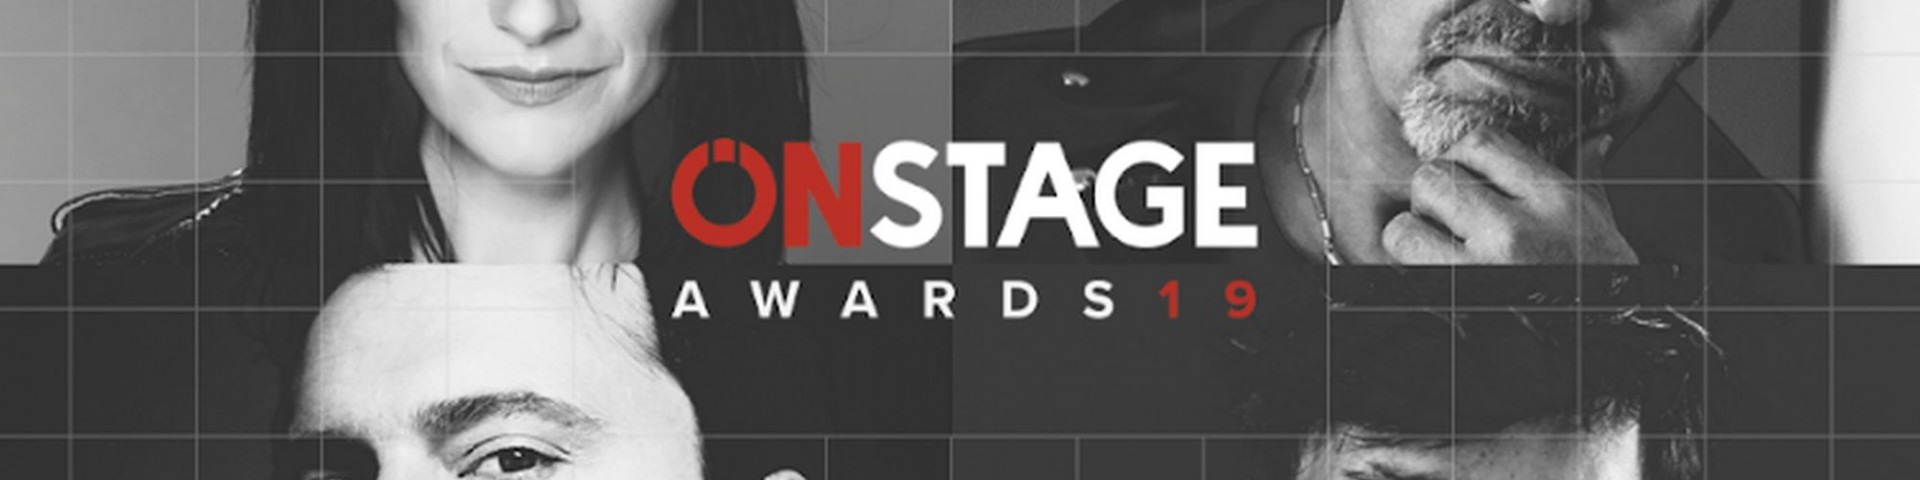 Onstage Awards 2019: vincono Laura Pausini, Cesare Cremonini, Ultimo e Vasco Rossi